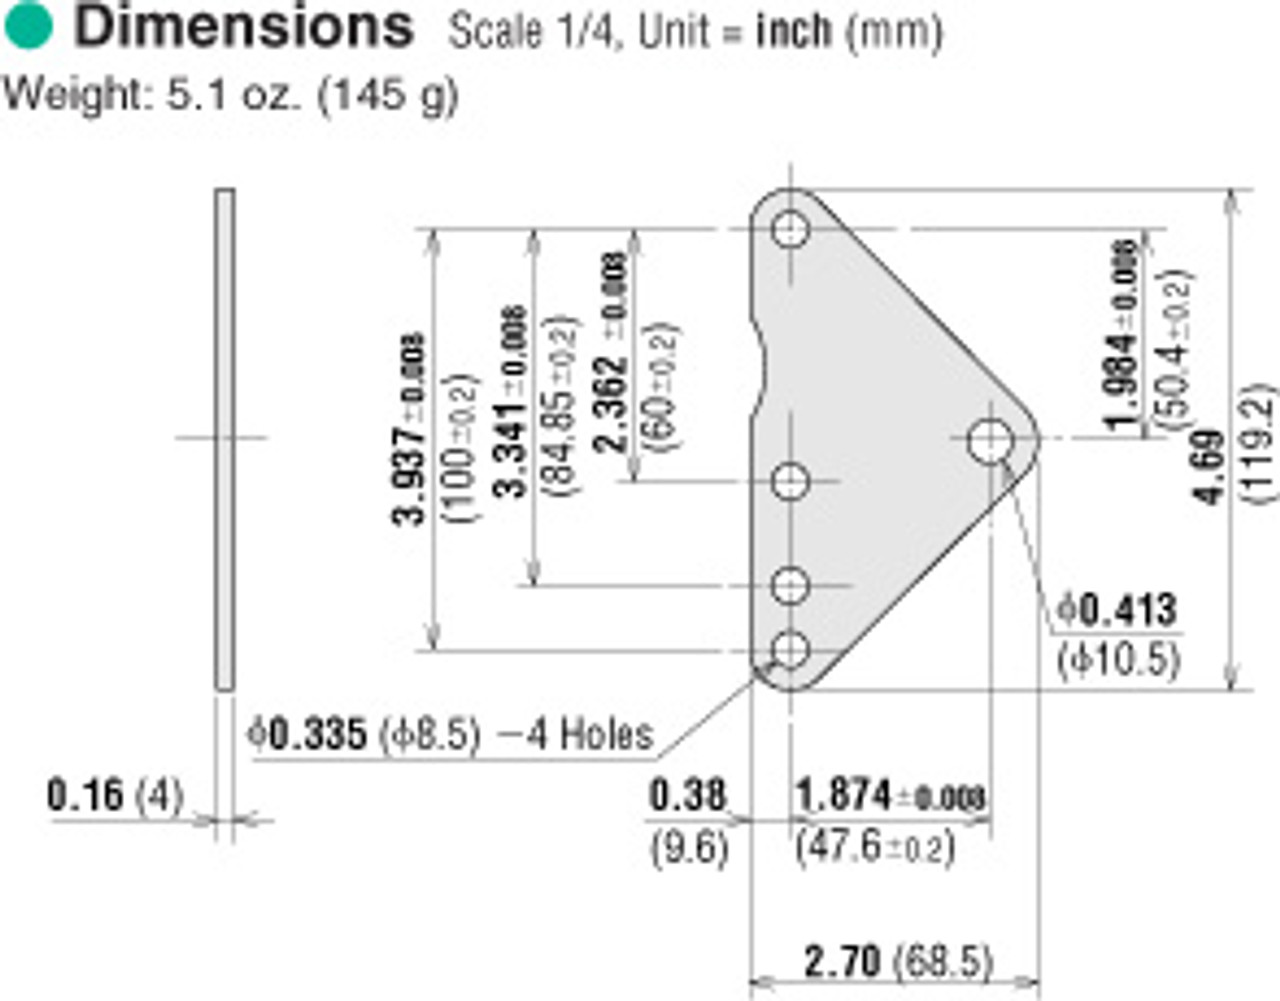 SOT6 - Dimensions